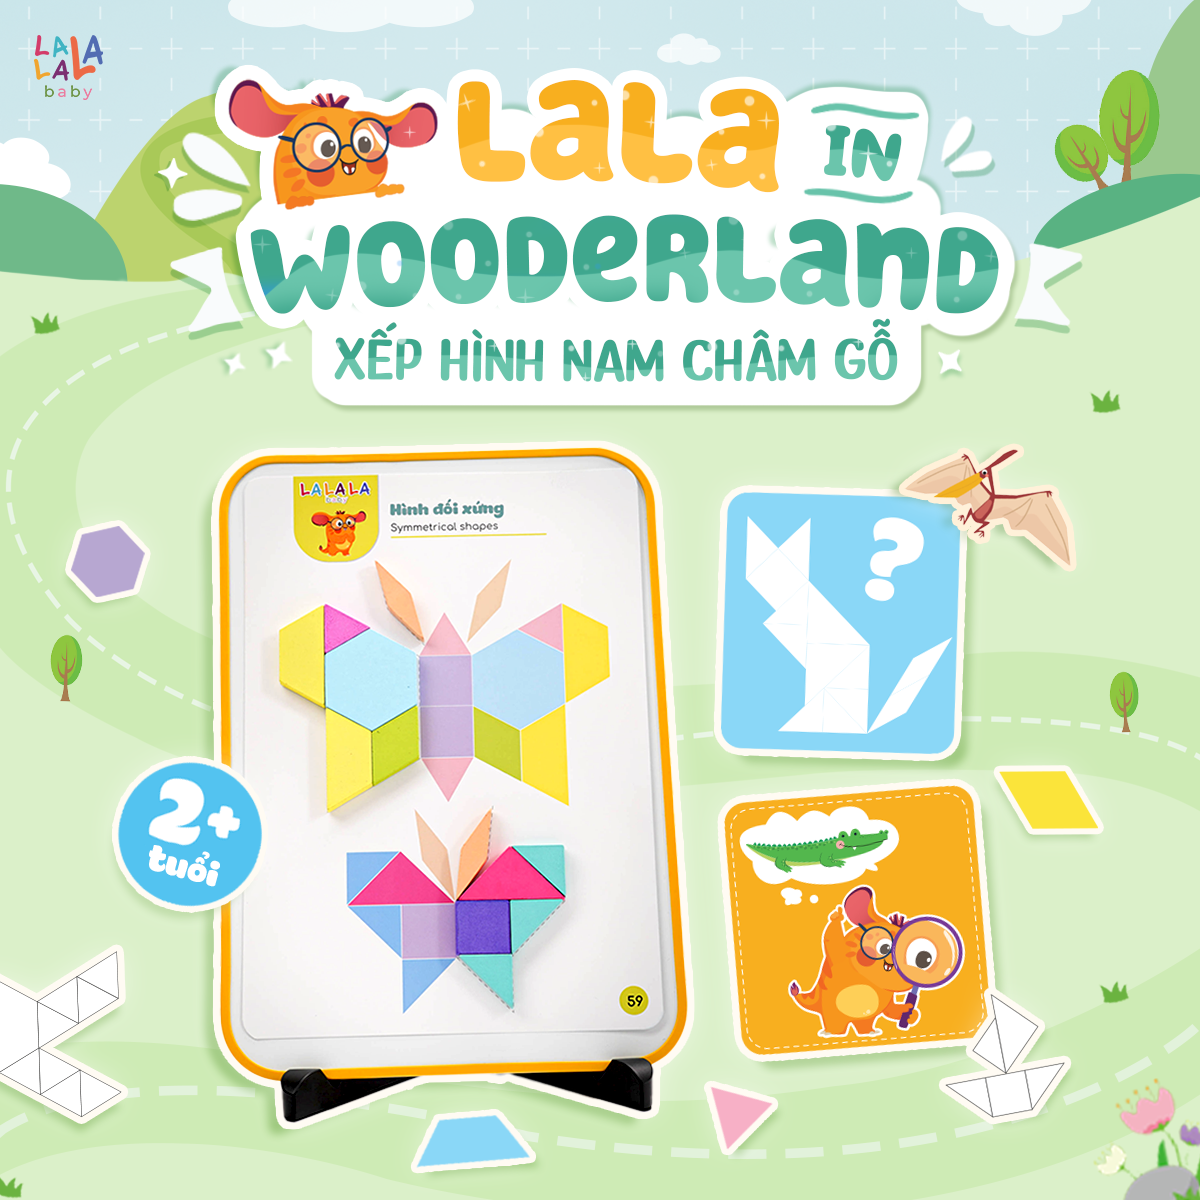 Đồ chơi xếp hình nam châm Lala Wooderland bằng gỗ cao cấp phát triển tư duy sáng tạo logic cho bé - Lalala baby